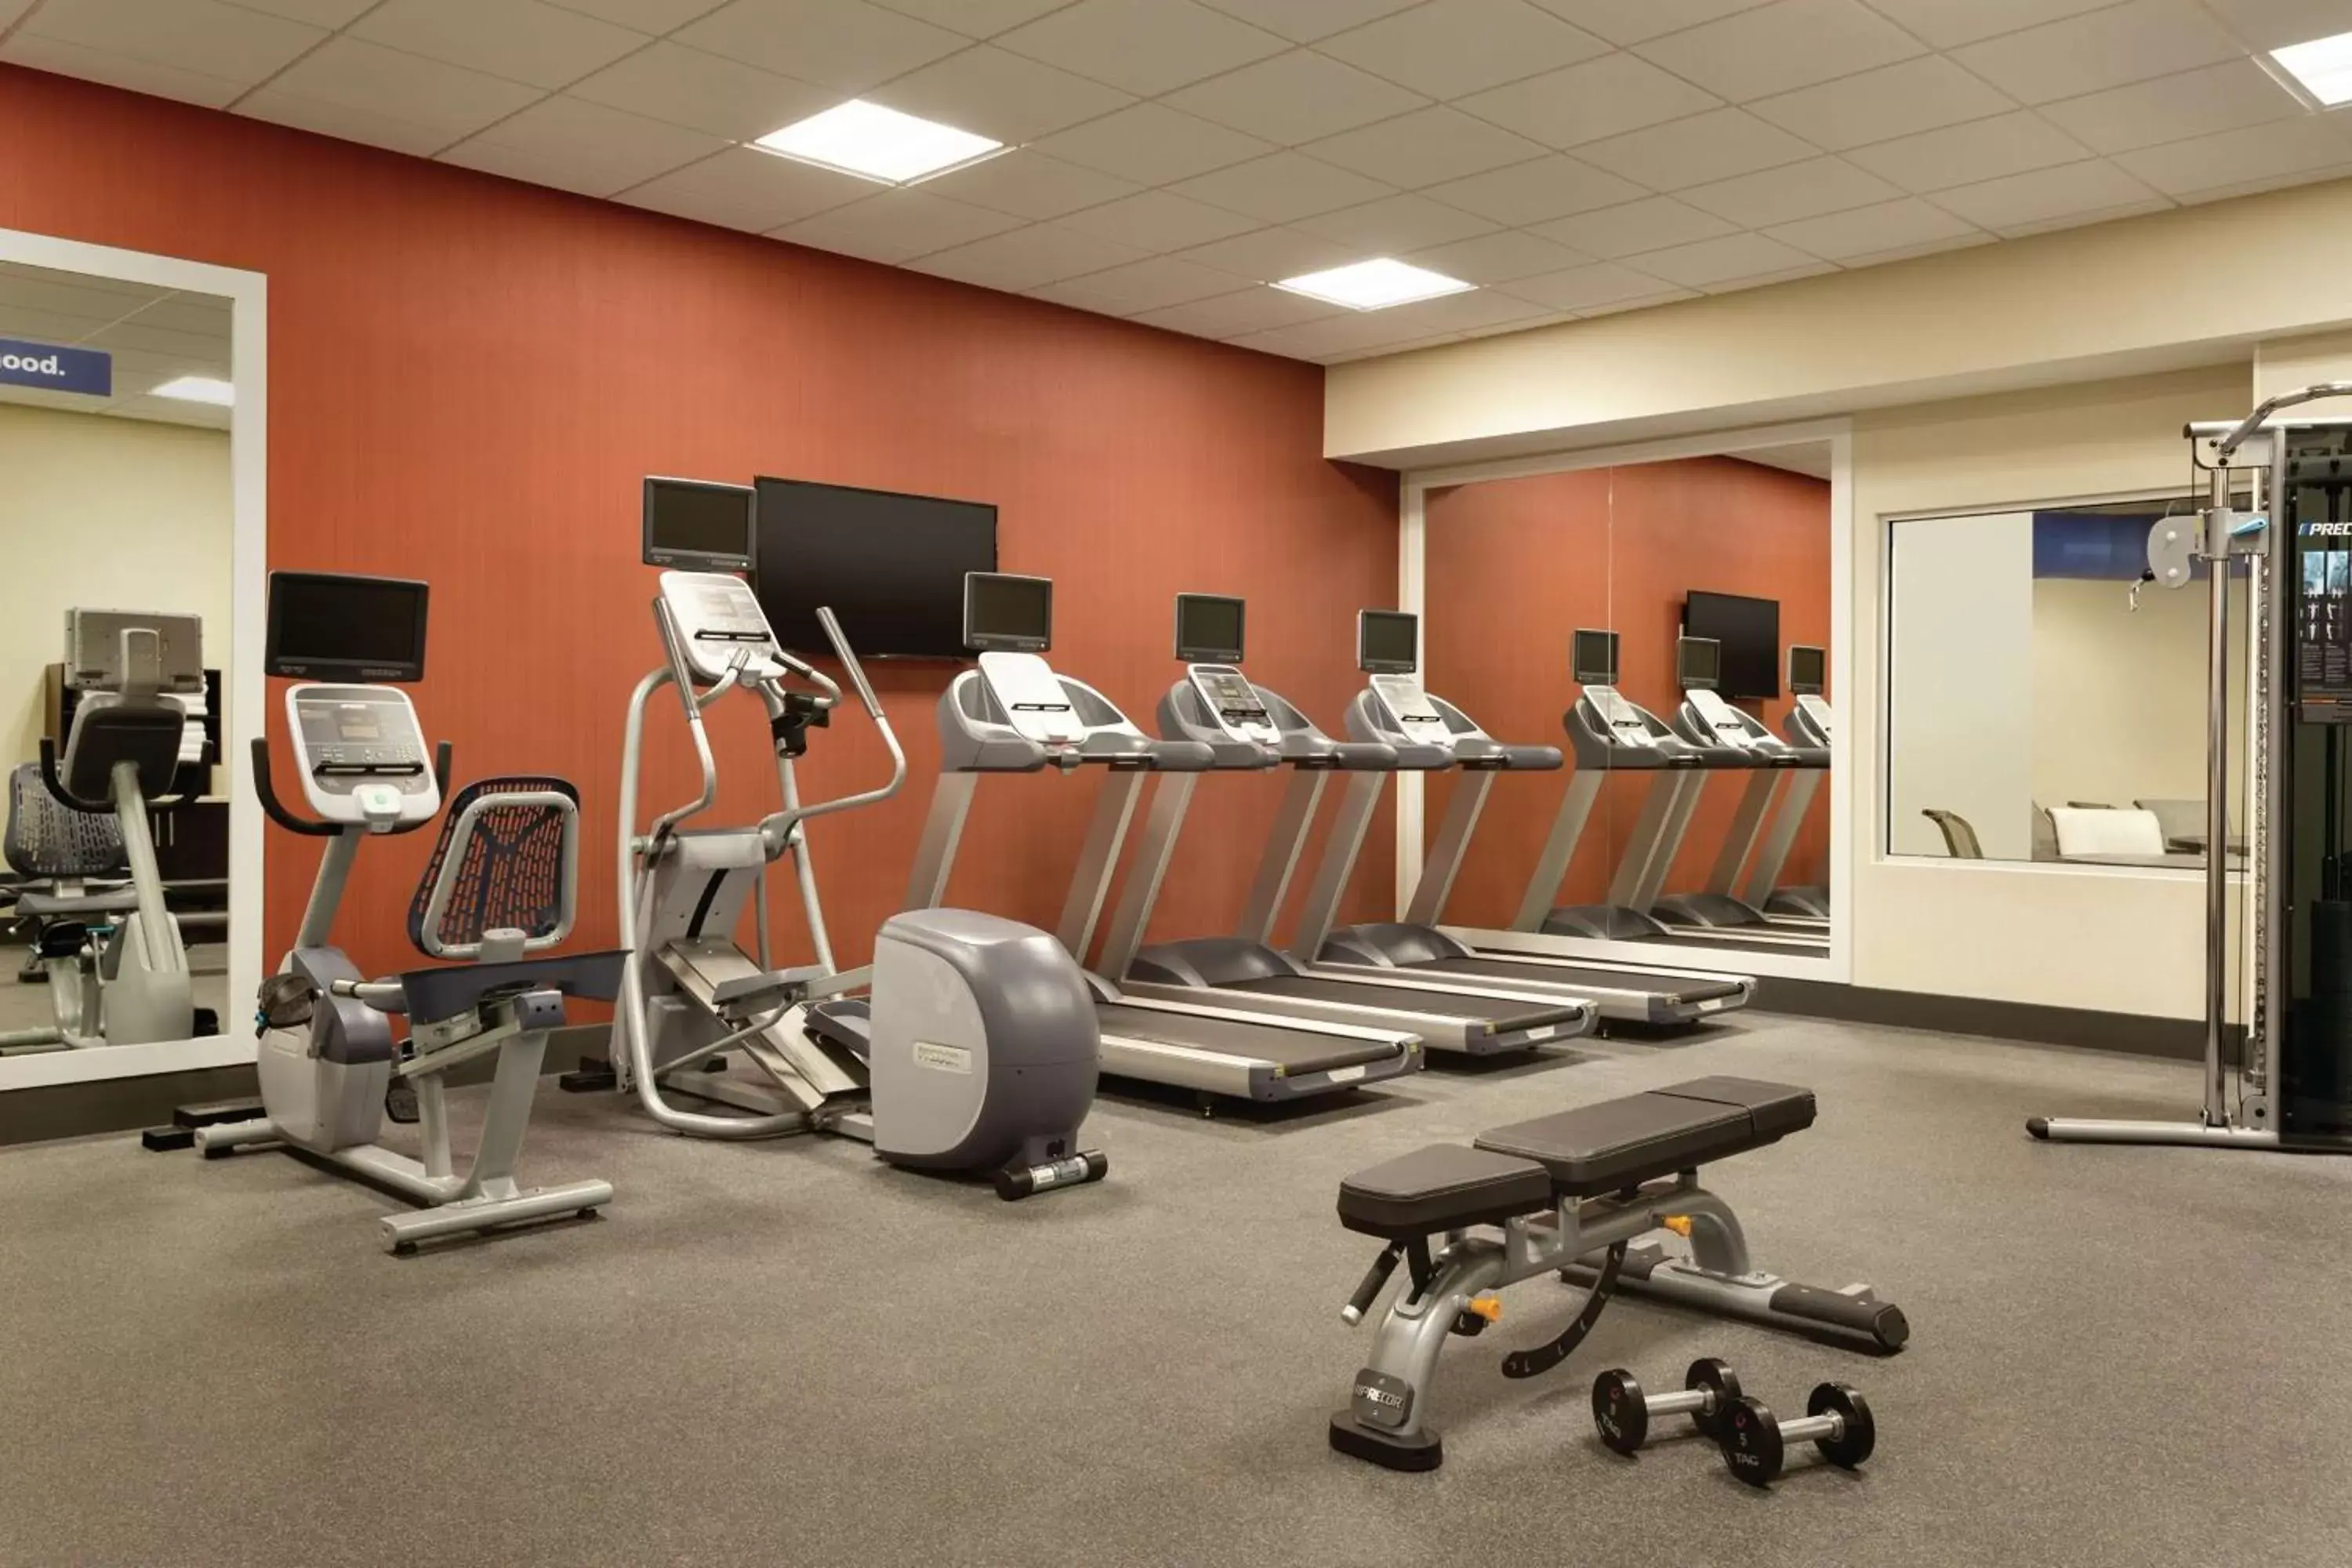 Fitness centre/facilities, Fitness Center/Facilities in Hampton Inn, St. Albans Vt